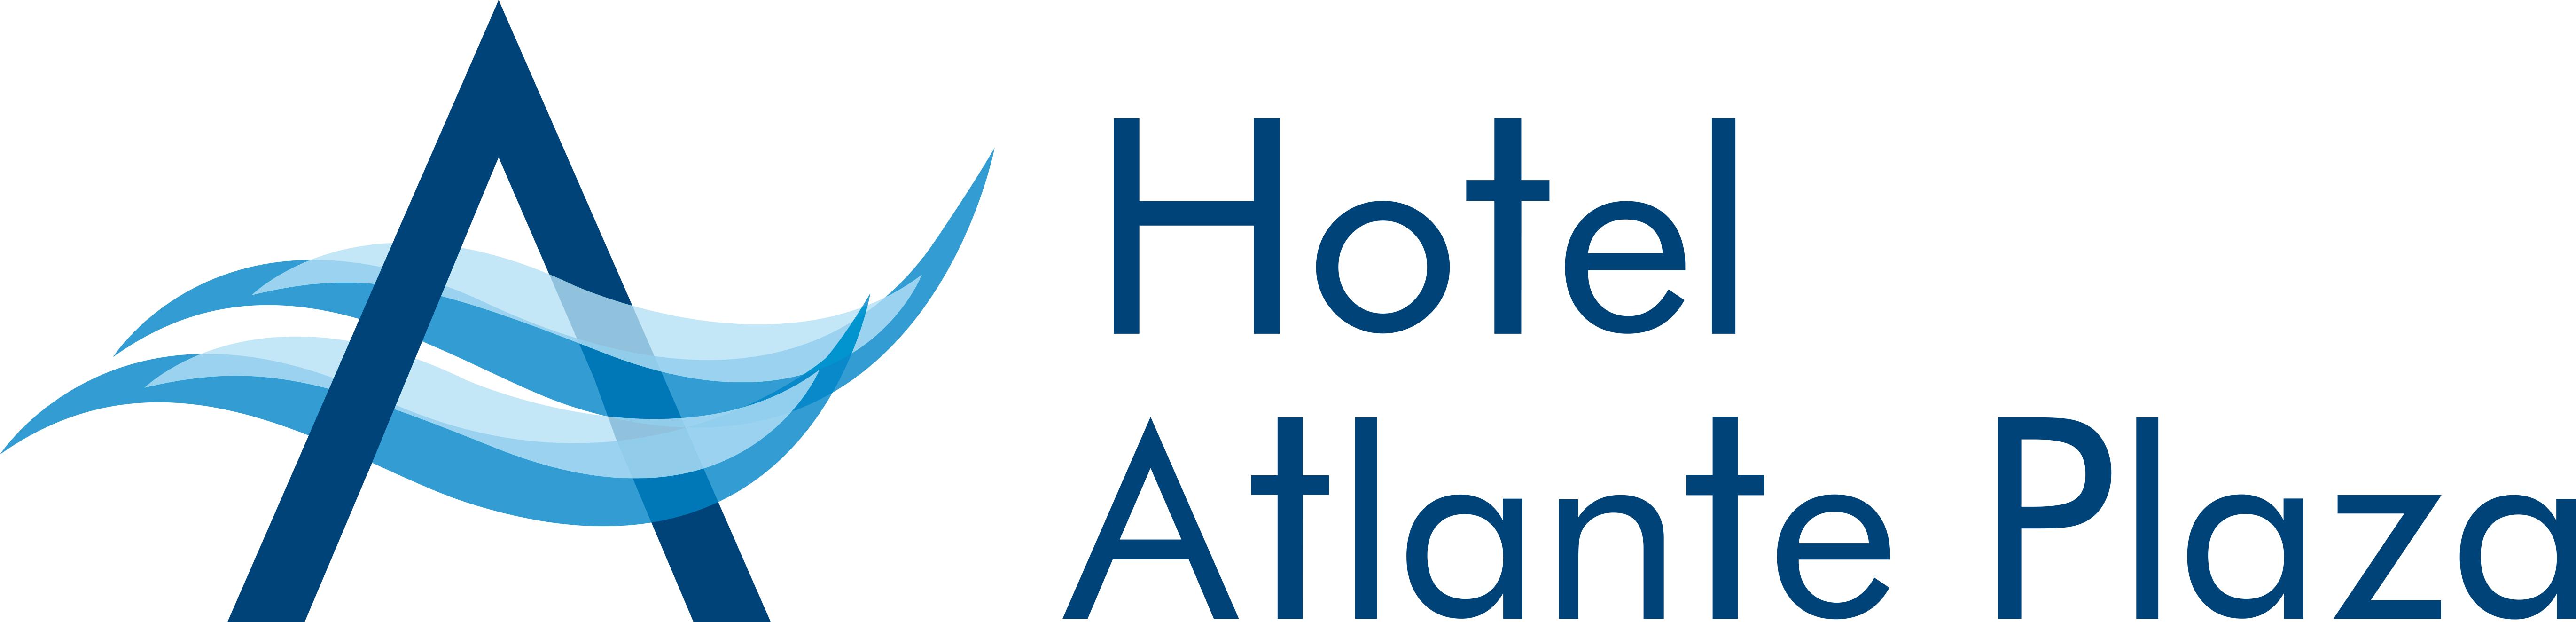 Hotel-Atlante-Plaza-2